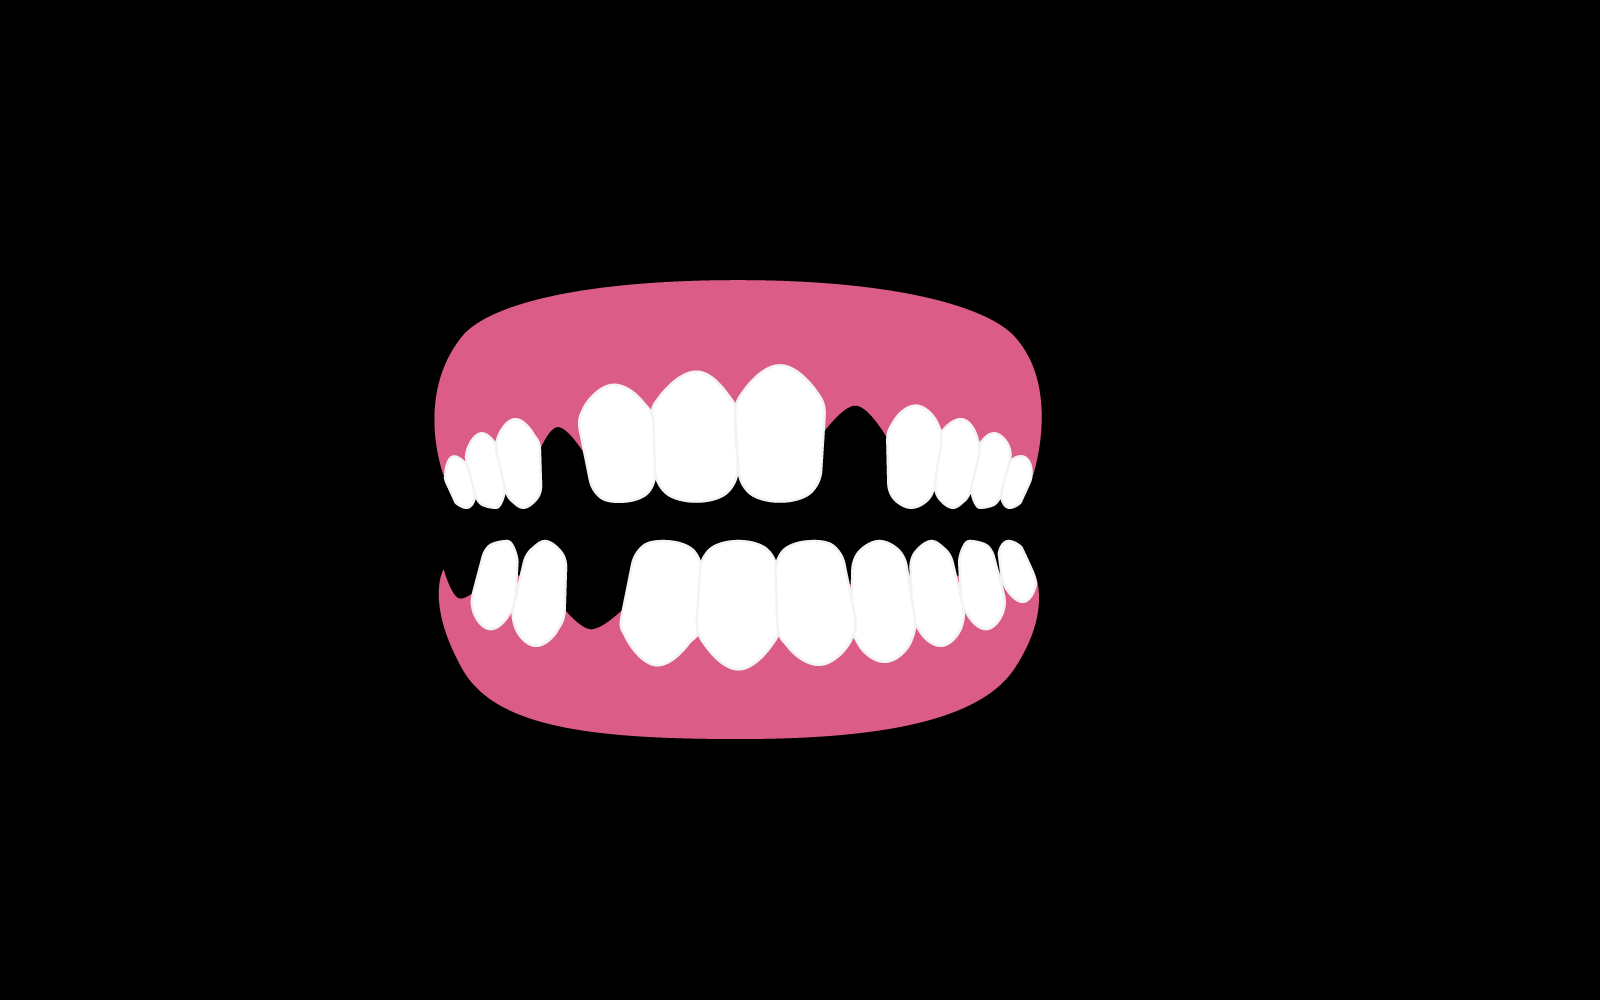 Modelo de design plano de vetor de ícone de dentadura